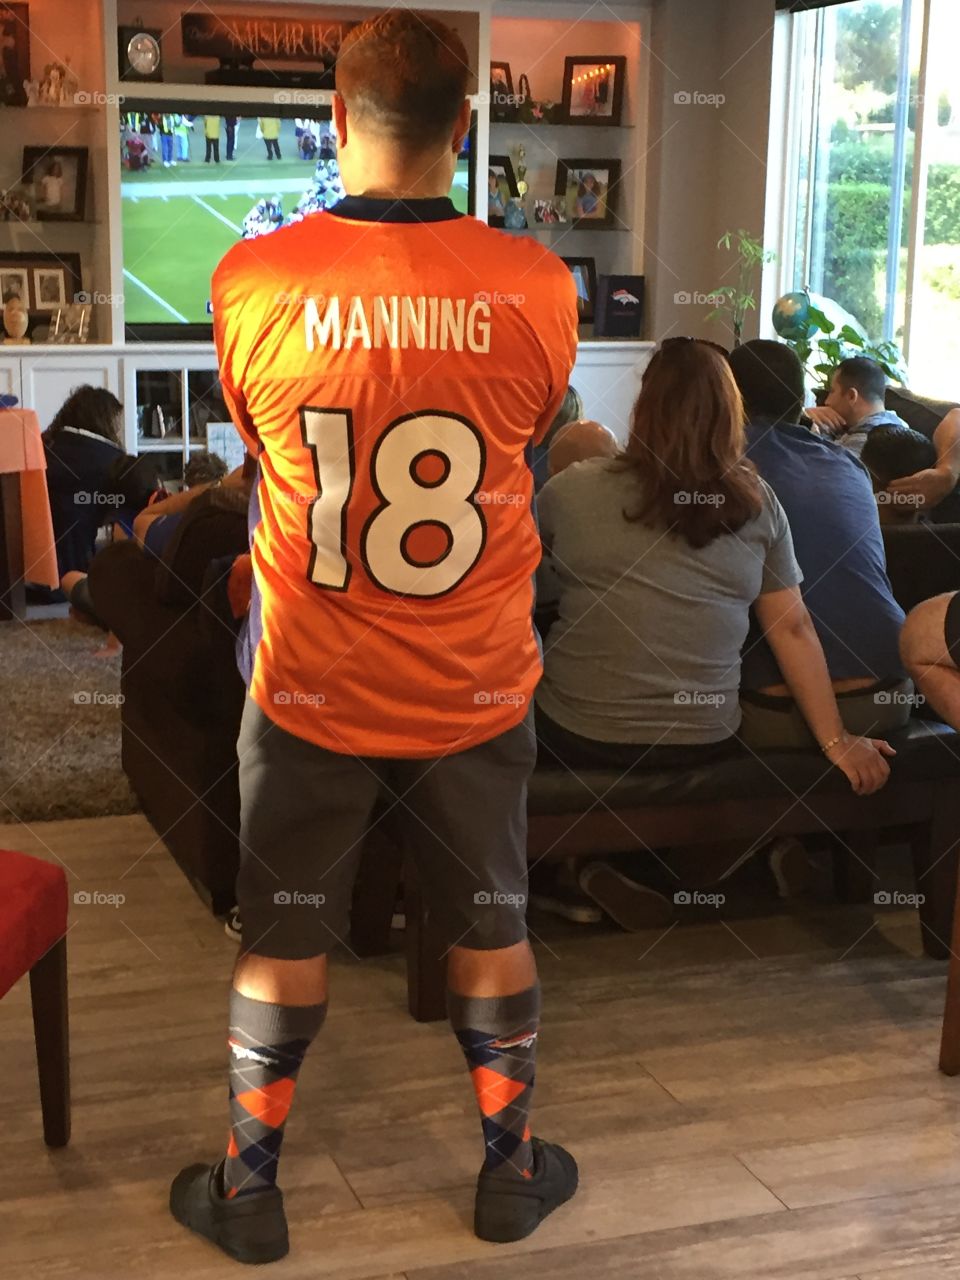 Peyton Manning All the Way!